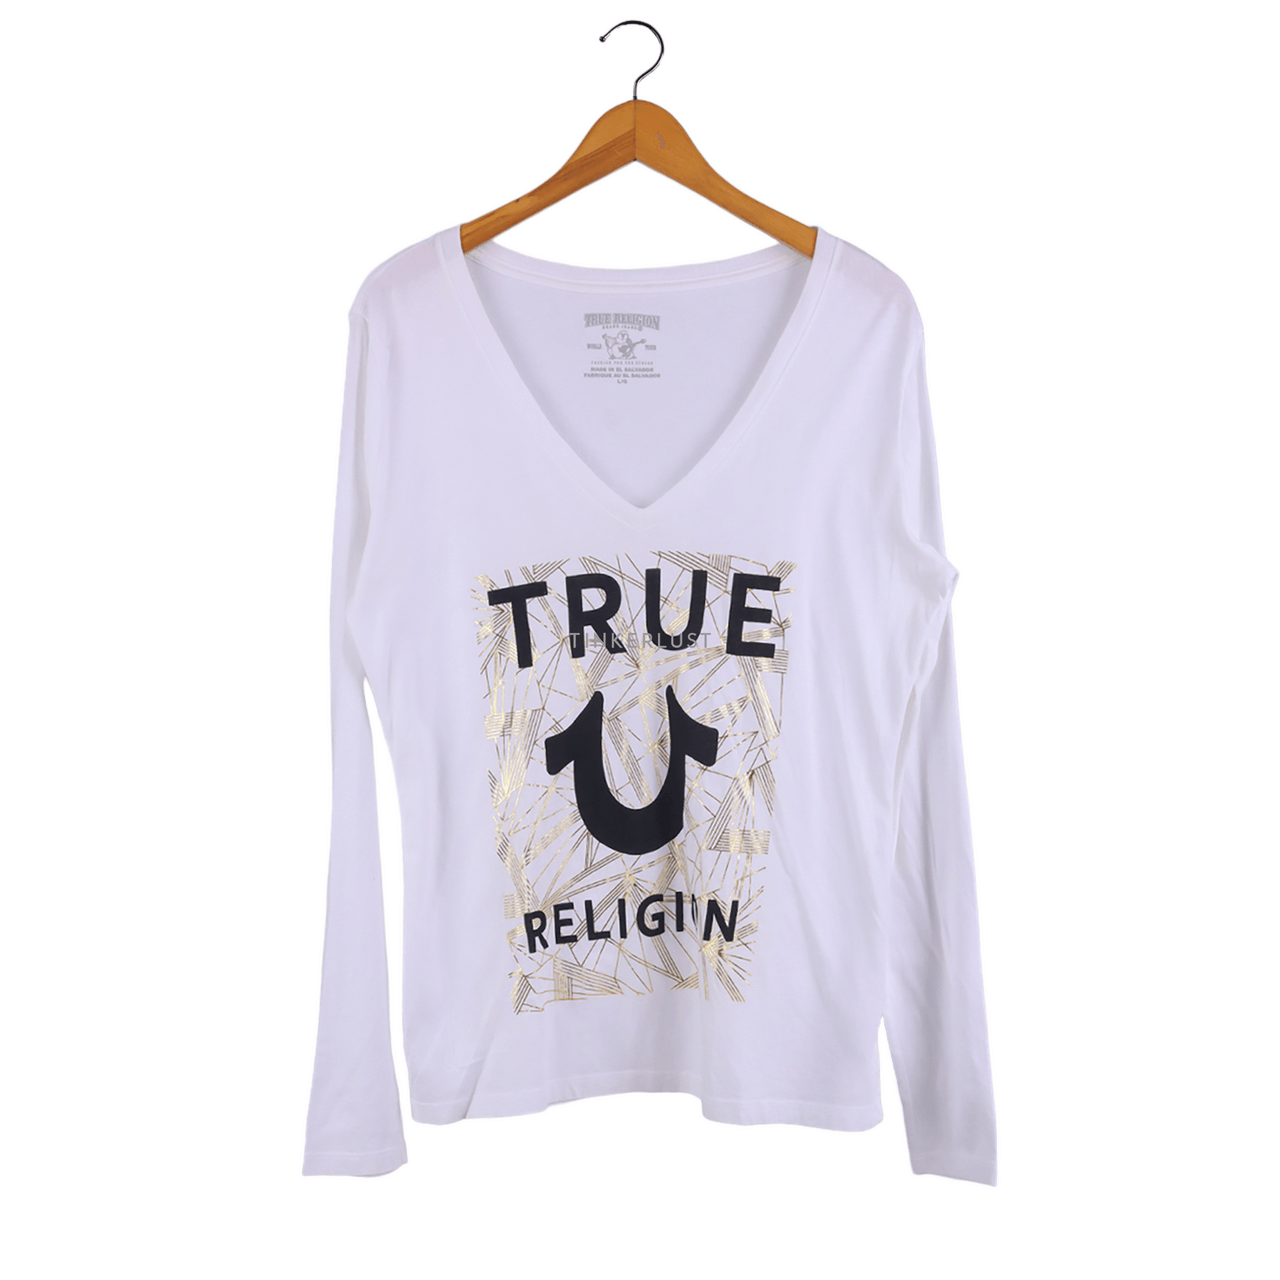 True Religion White Long SleeveT-Shirt